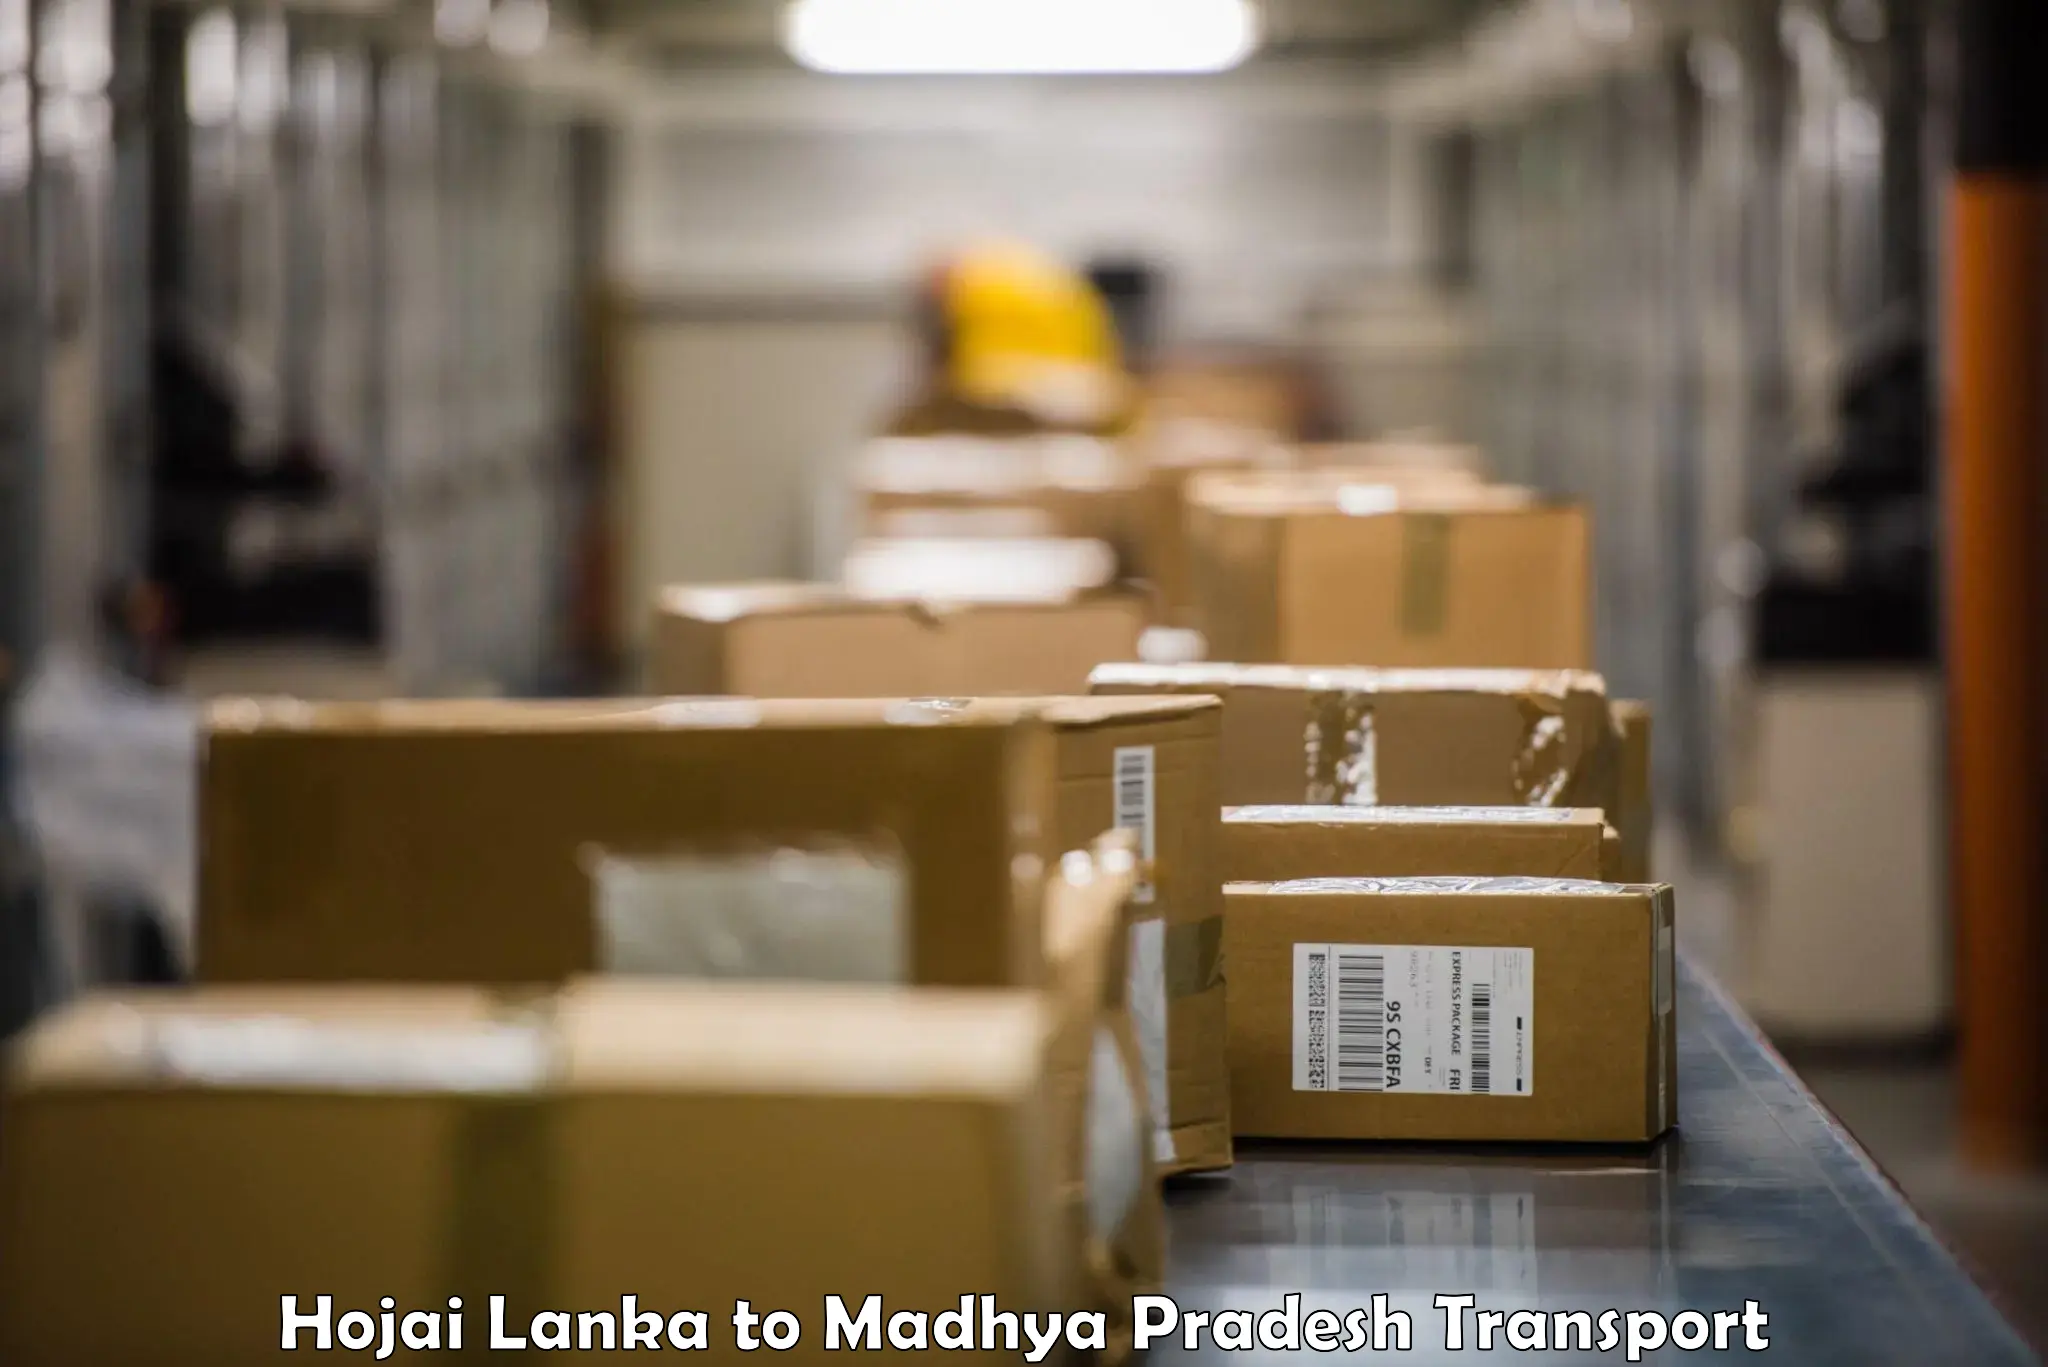 Land transport services Hojai Lanka to Mundi